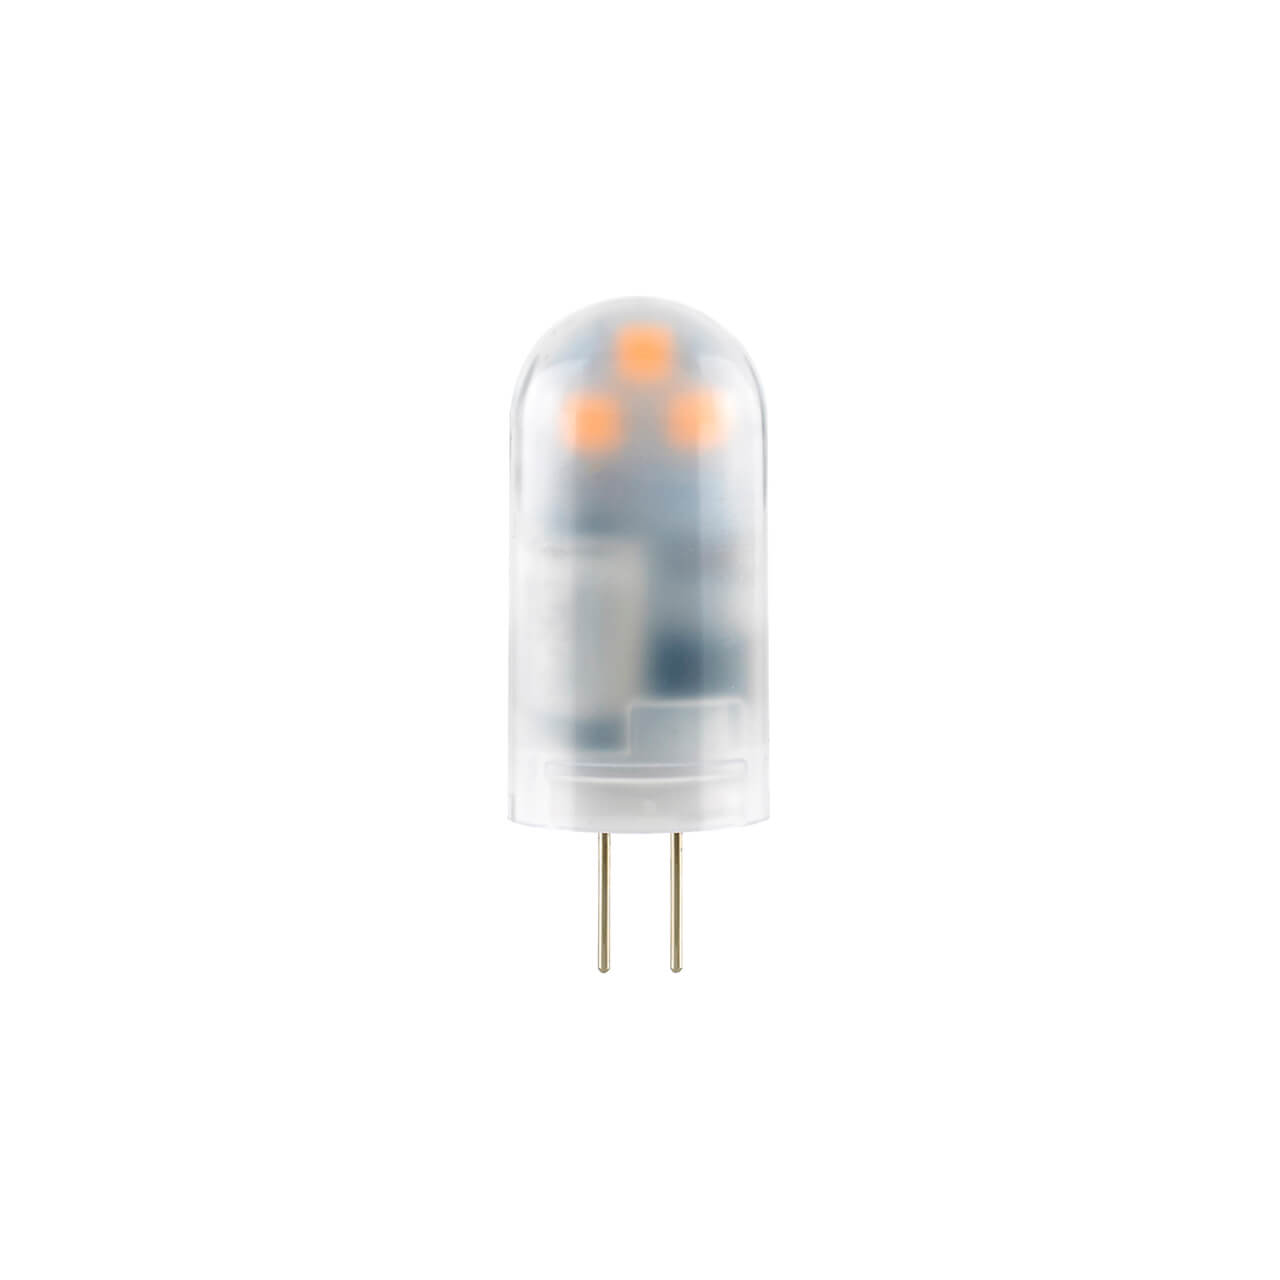 SIGOR 5750201 1,7W ECOLUX LED G4 2700K 12V LED Lampe